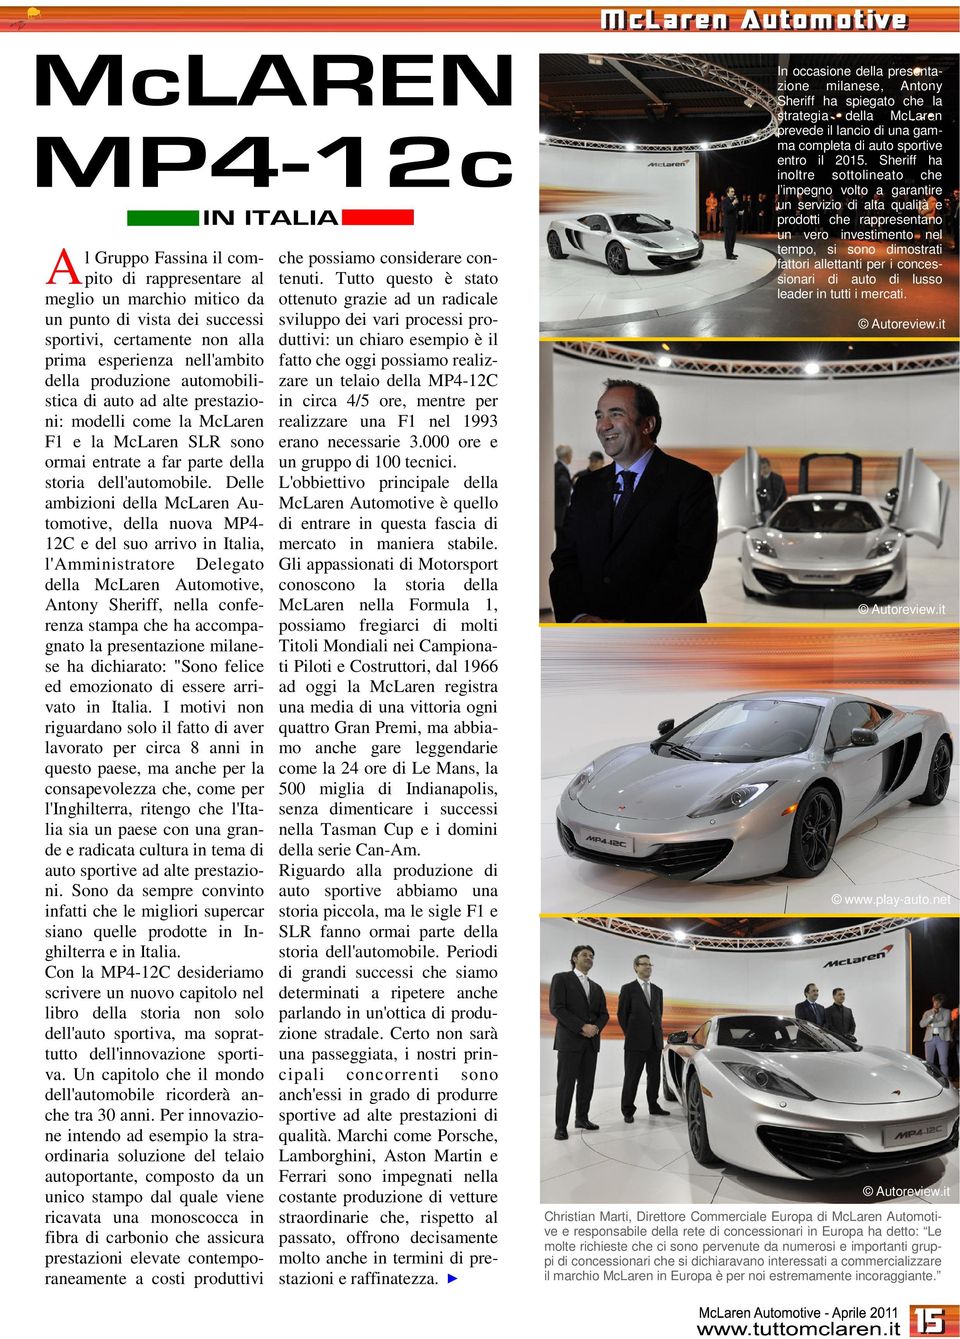 Delle ambizioni della McLaren Automotive, della nuova MP4-2C e del suo arrivo in Italia, l'amministratore Delegato della McLaren Automotive, Antony Sheriff, nella conferenza stampa che ha